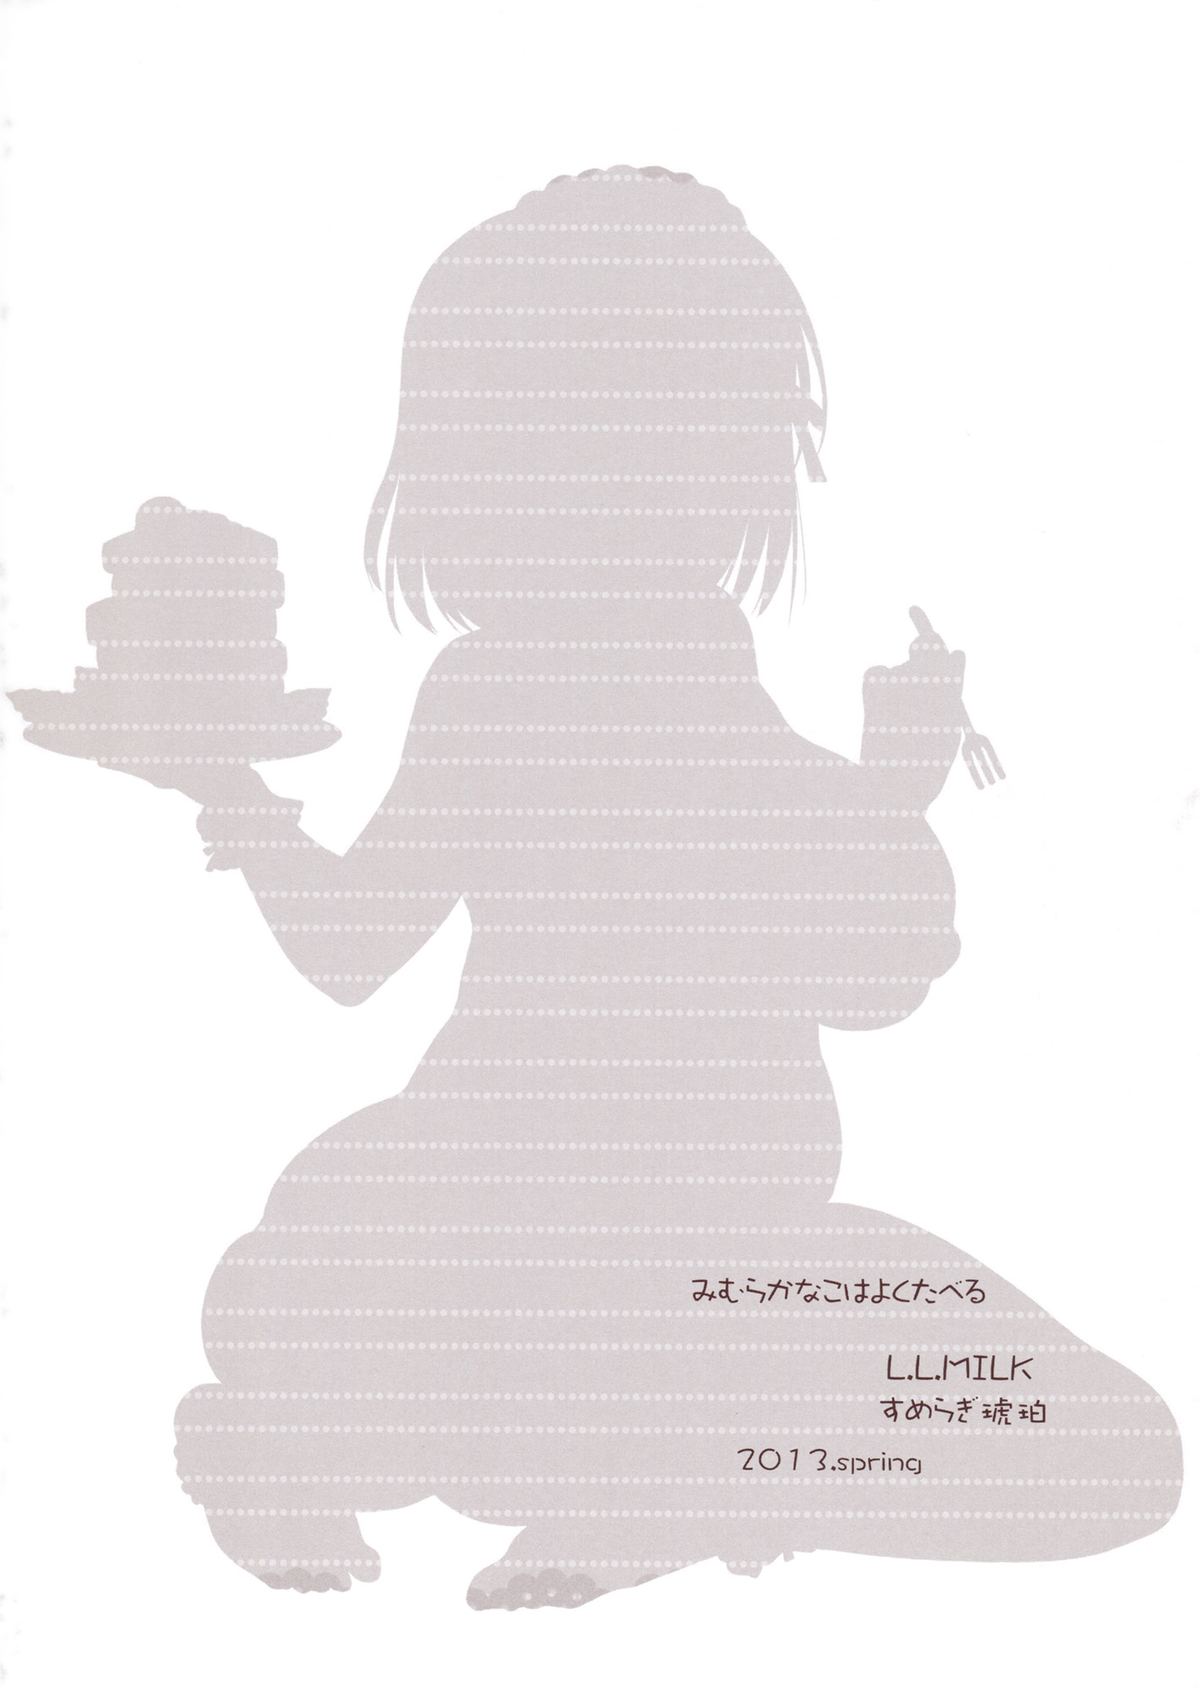 (こみトレ21) [L.L.MILK (すめらぎ琥珀)] 三村かな子はよく食べる (アイドルマスター シンデレラガールズ)